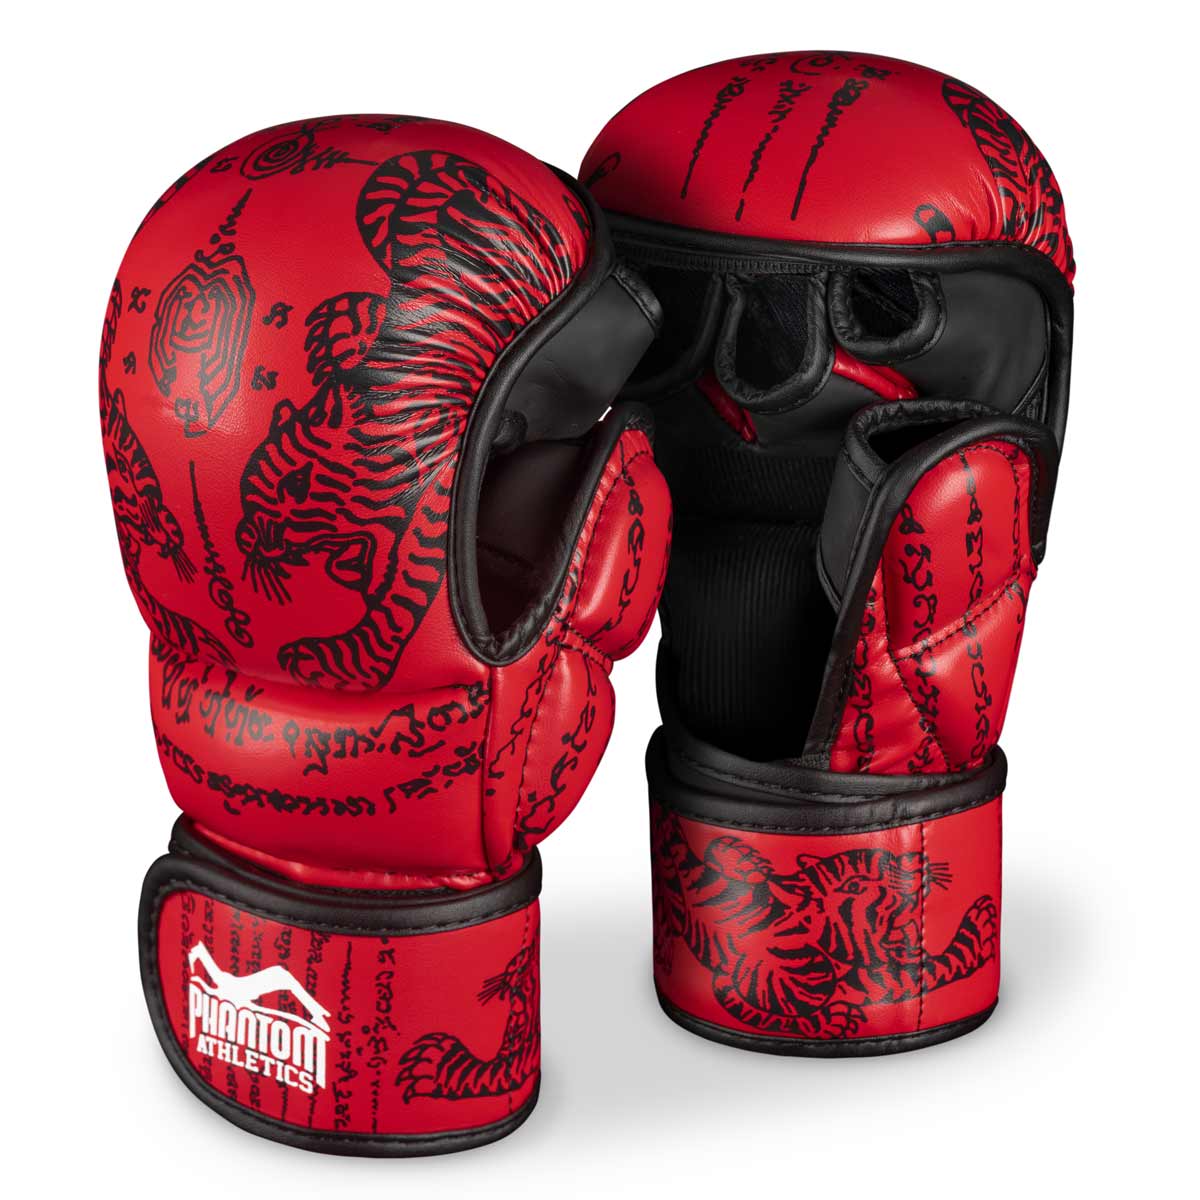 Luvas Phantom Muay Thai para boxe tailandês e sparring, competição e treinamento de MMA. No design tradicional Sak Yant e na cor vermelha.